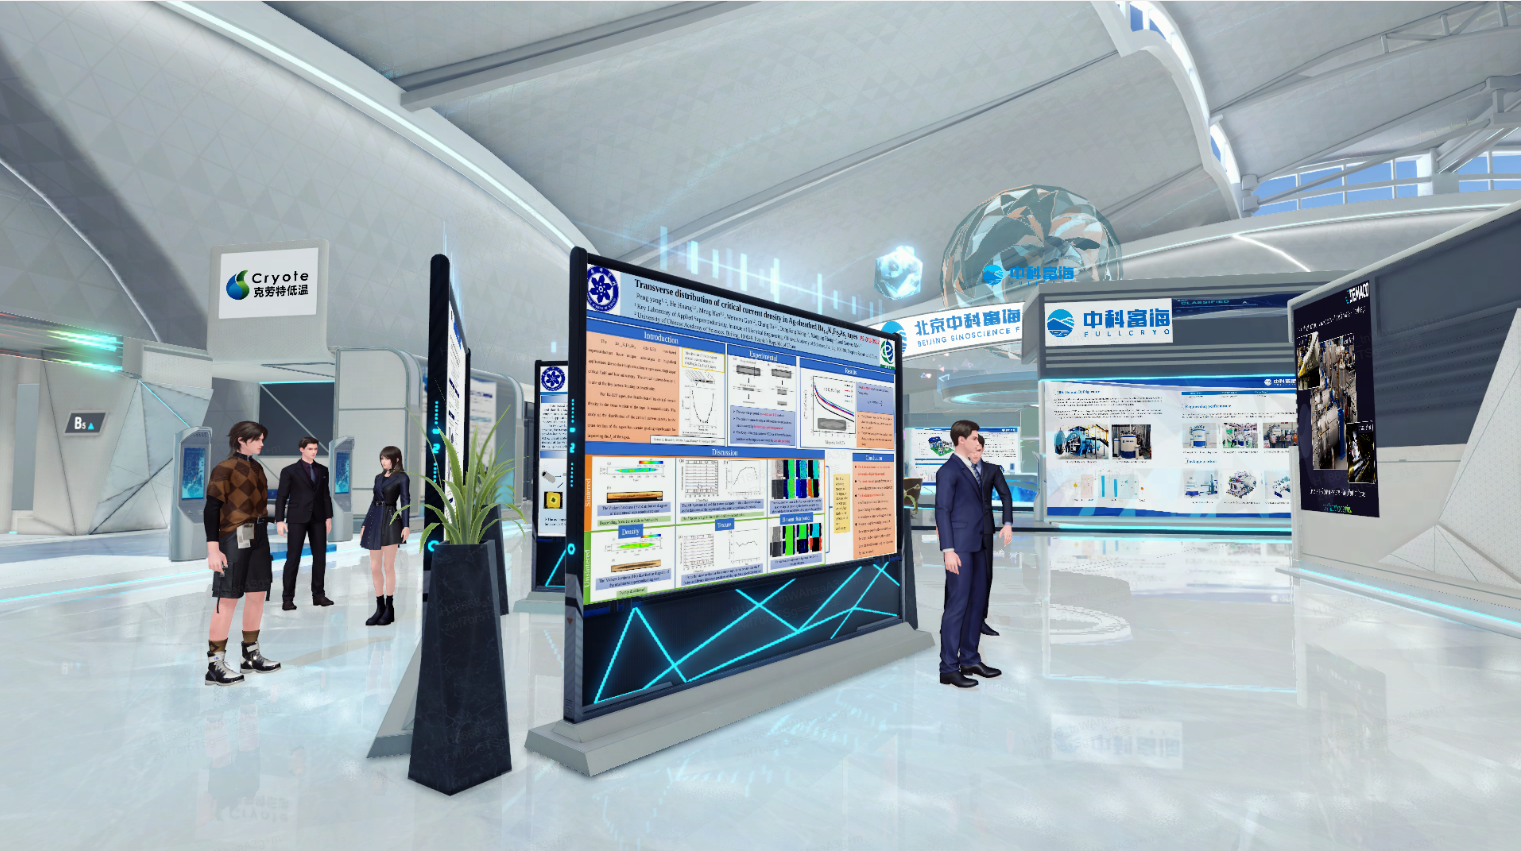 这是一张现代展览会的图片，人们正在查看展板，环境设计现代化，以蓝白色调为主，展示了科技或学术内容。